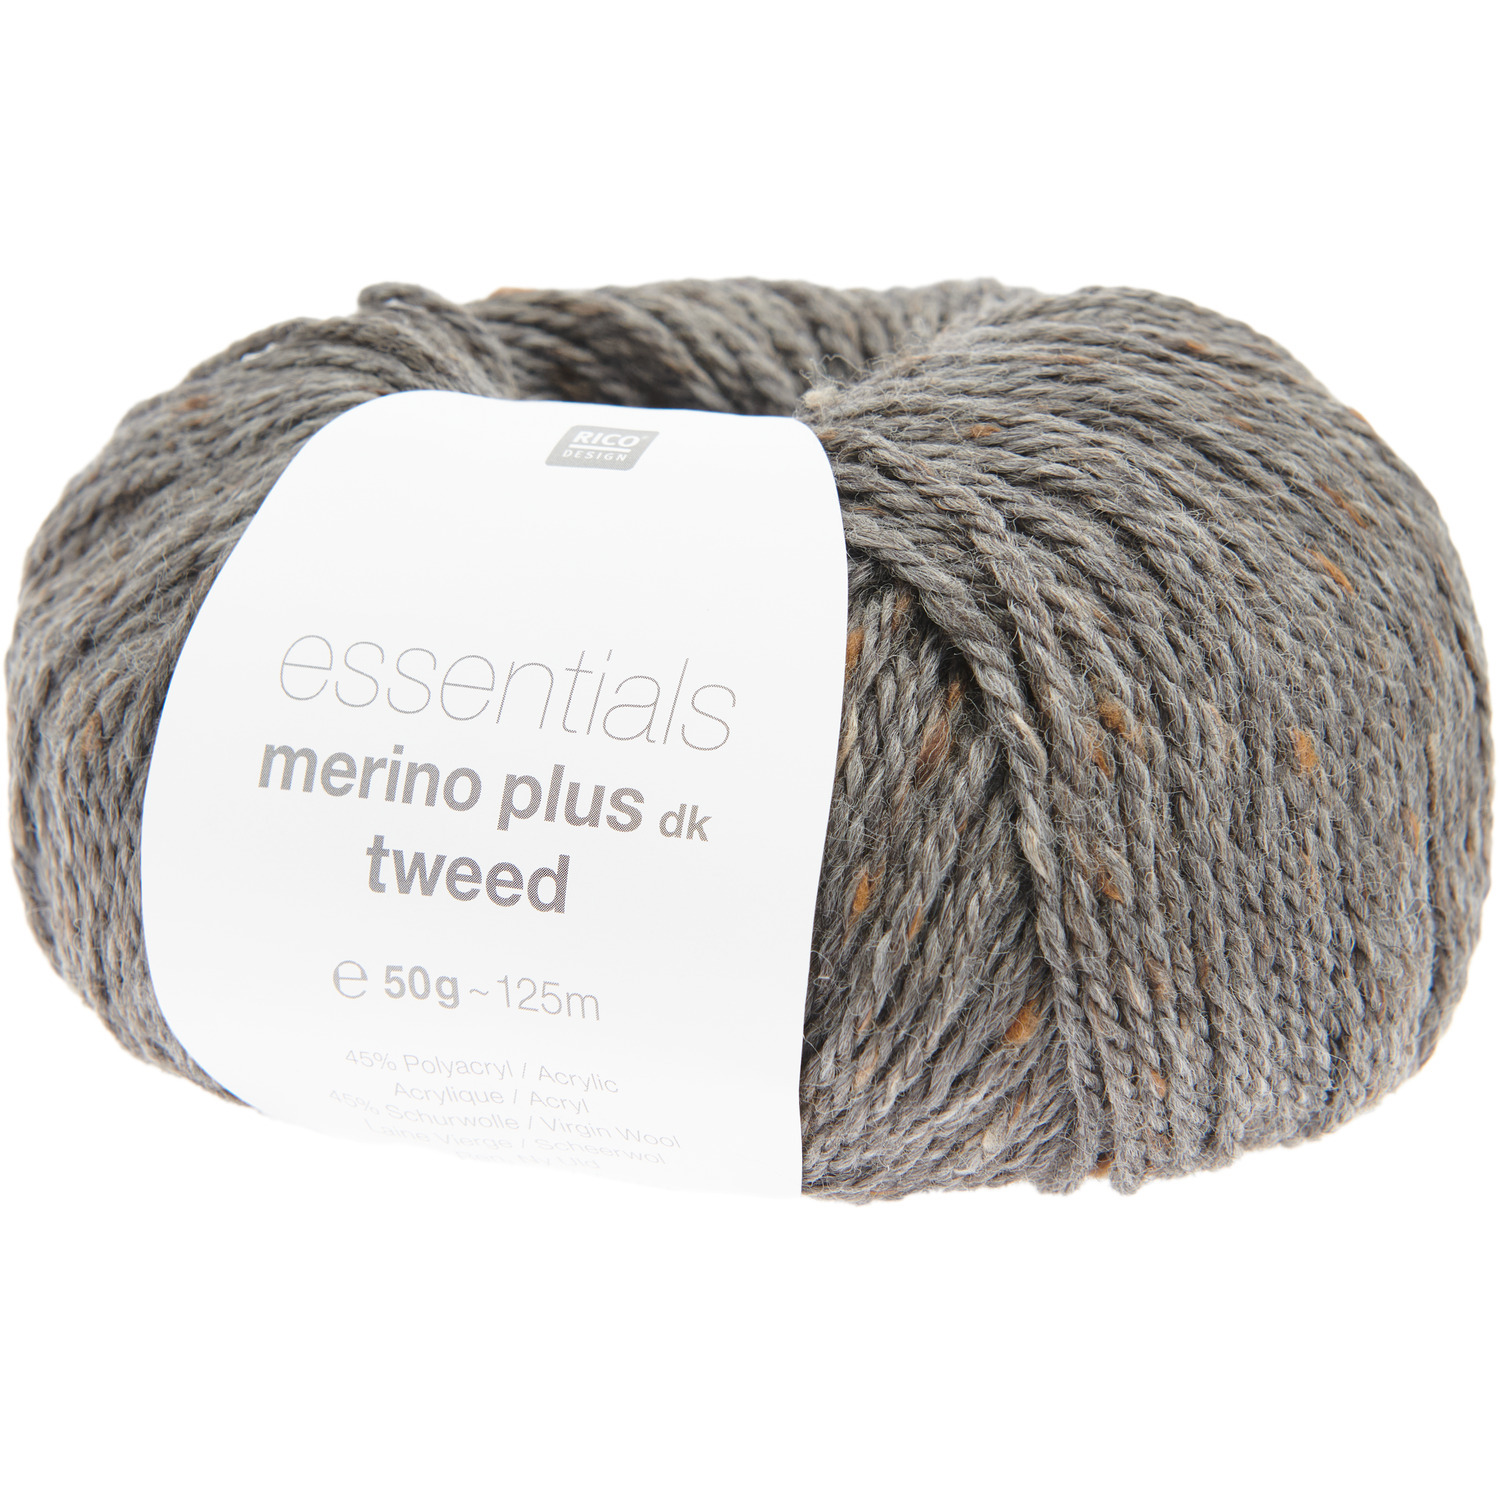 Essentials Merino Plus Tweed dk